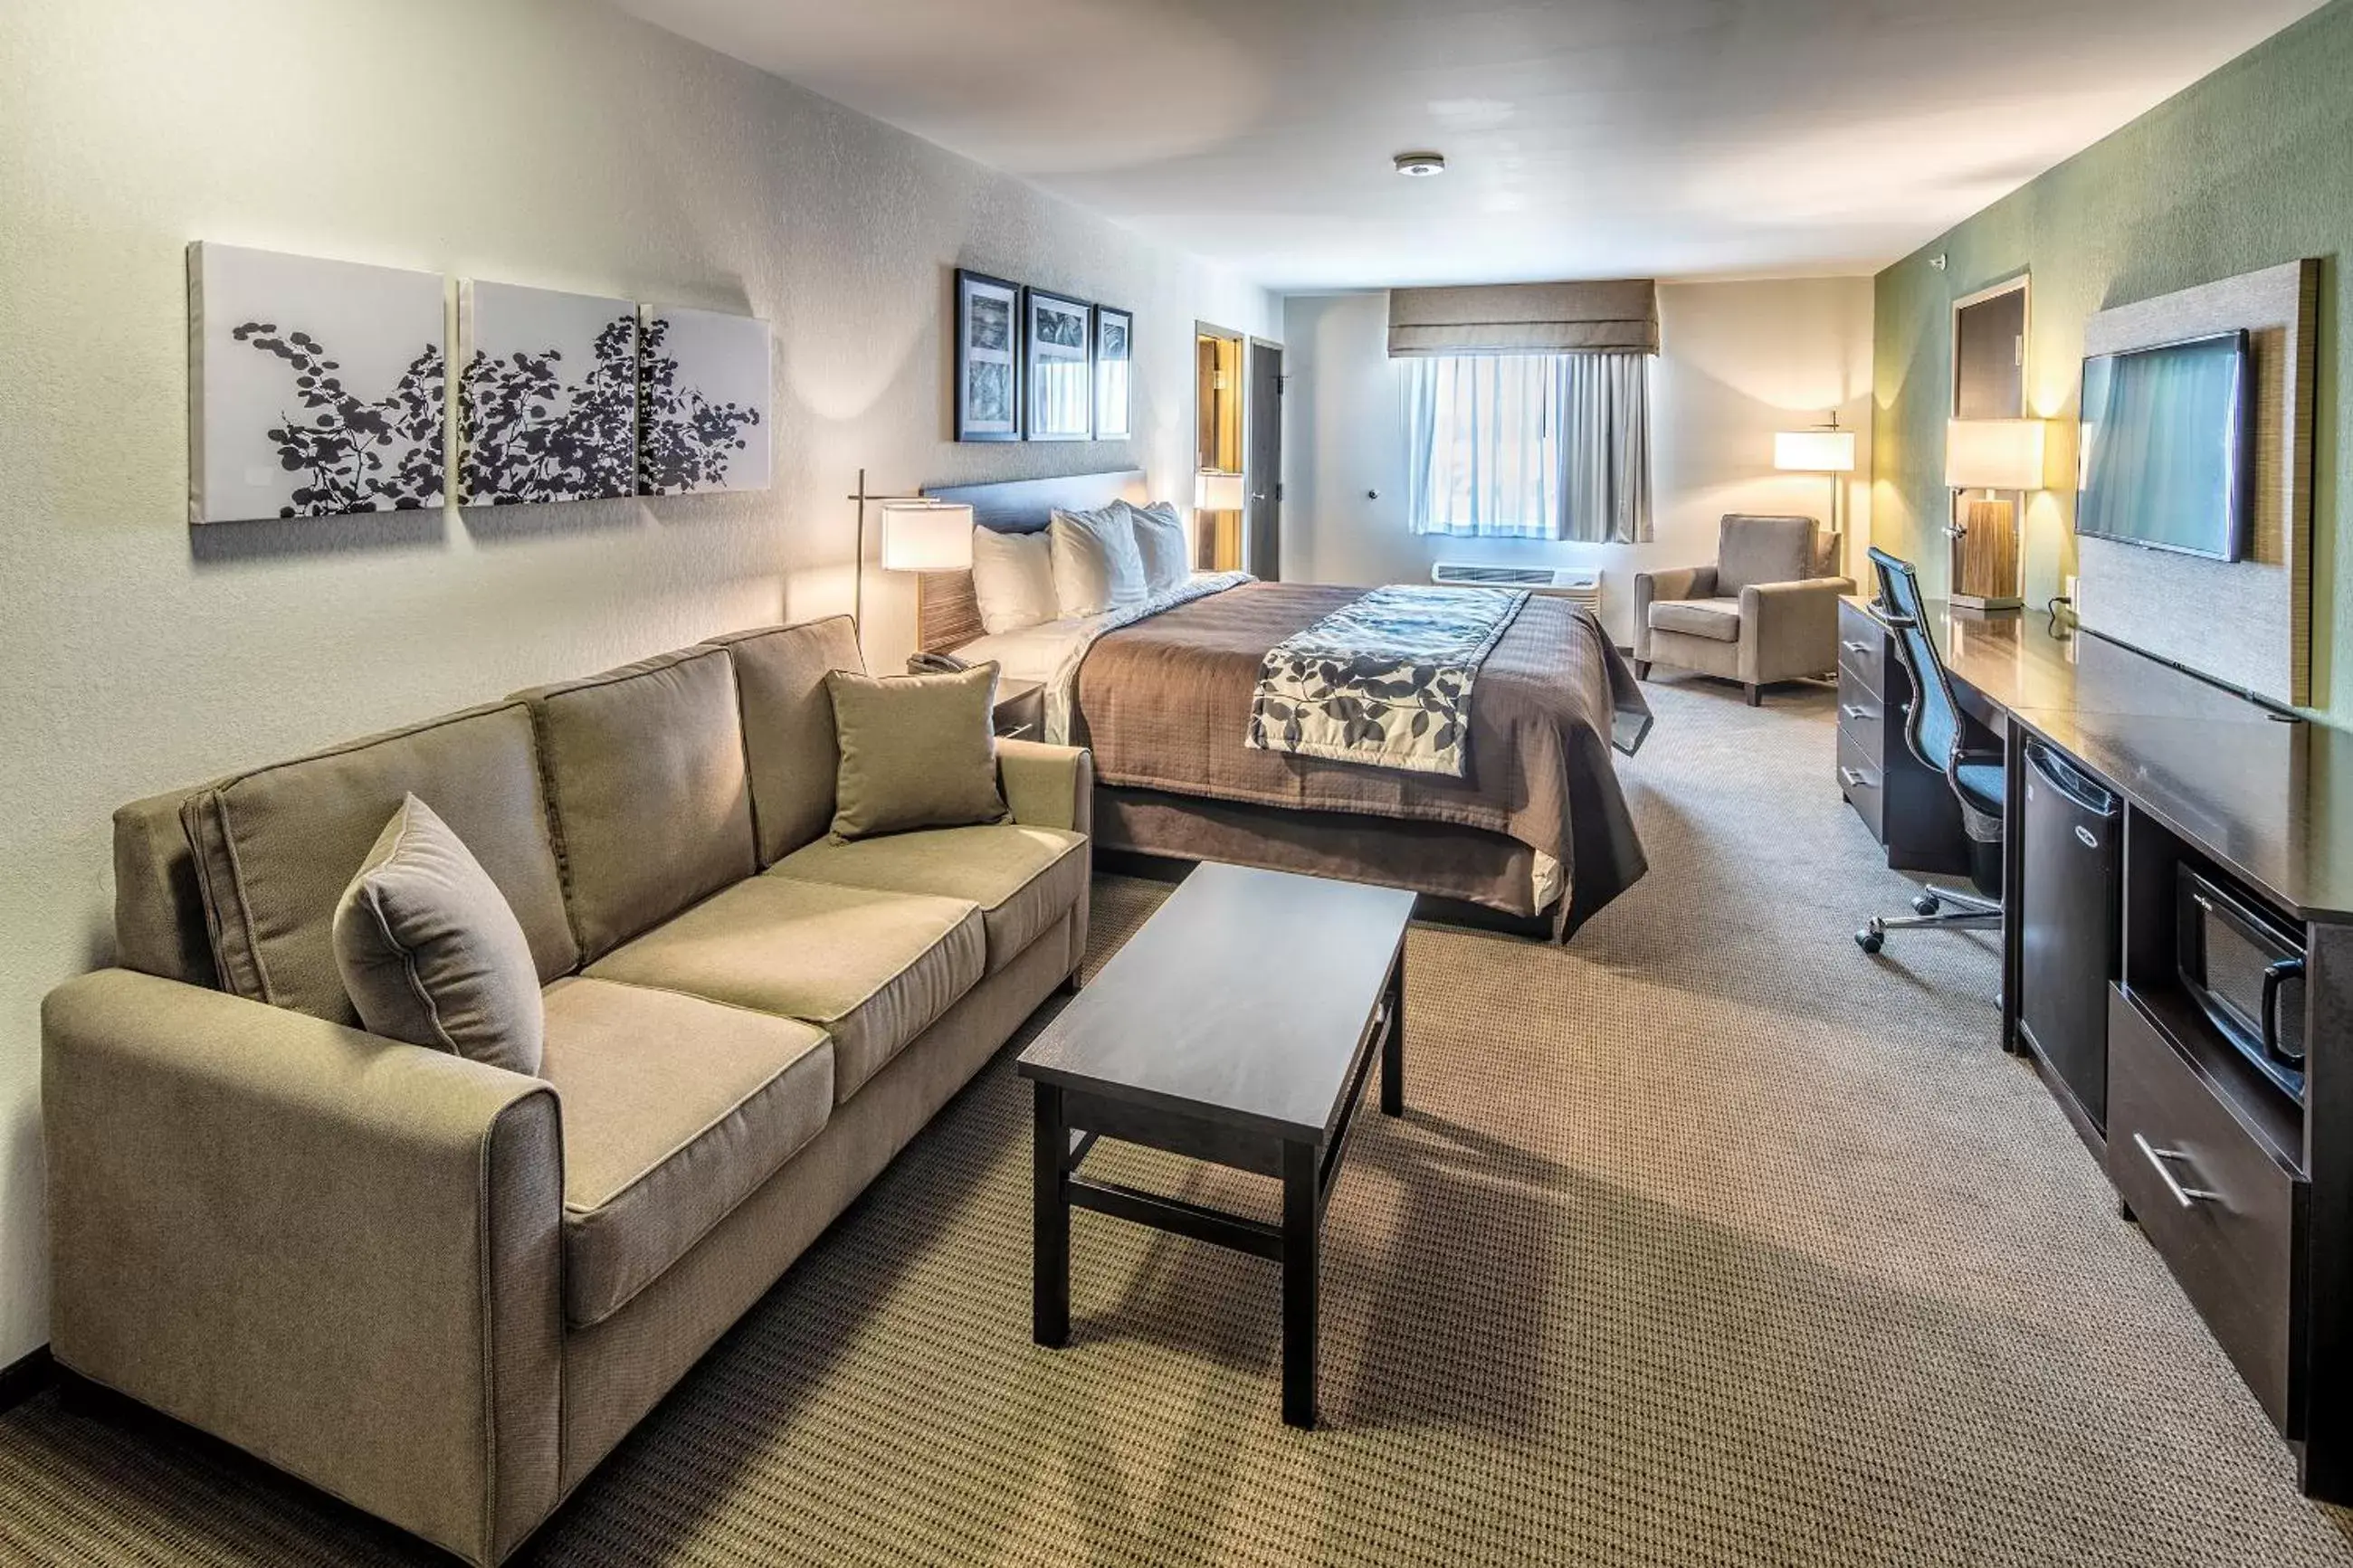 TV and multimedia, Room Photo in Sleep Inn & Suites East Syracuse